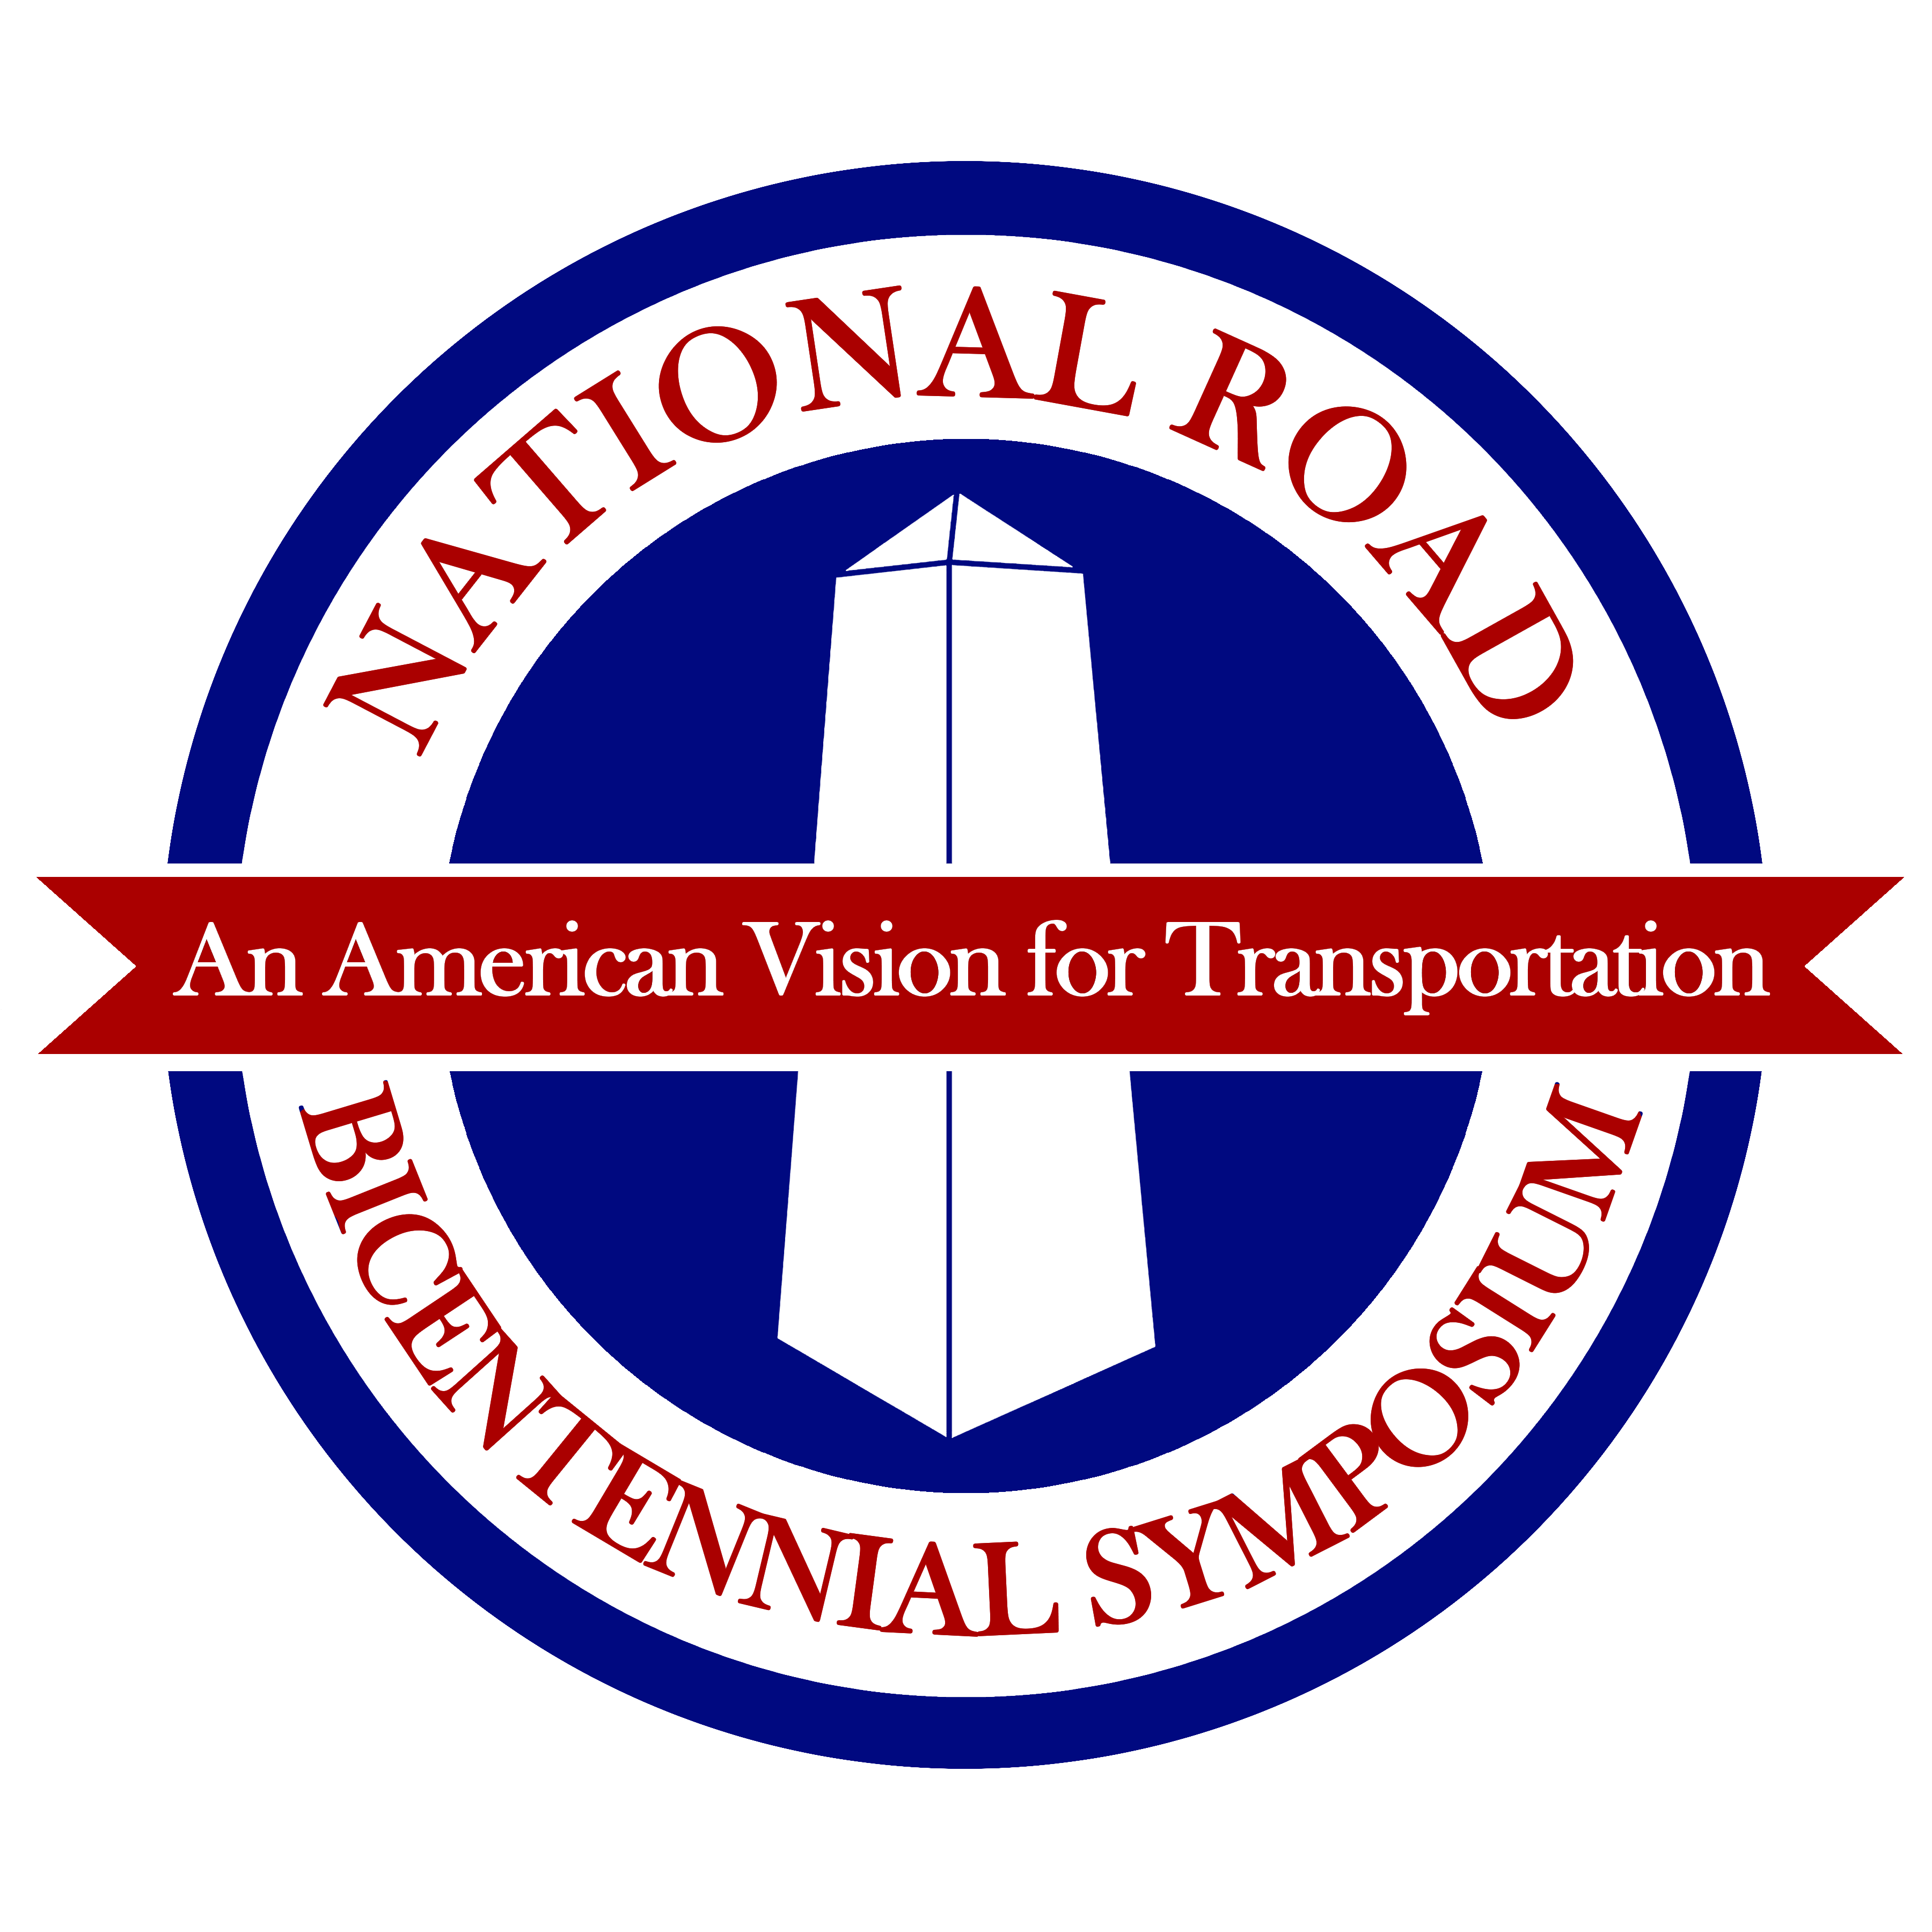 Logo: National Road Bicentennial Symposium